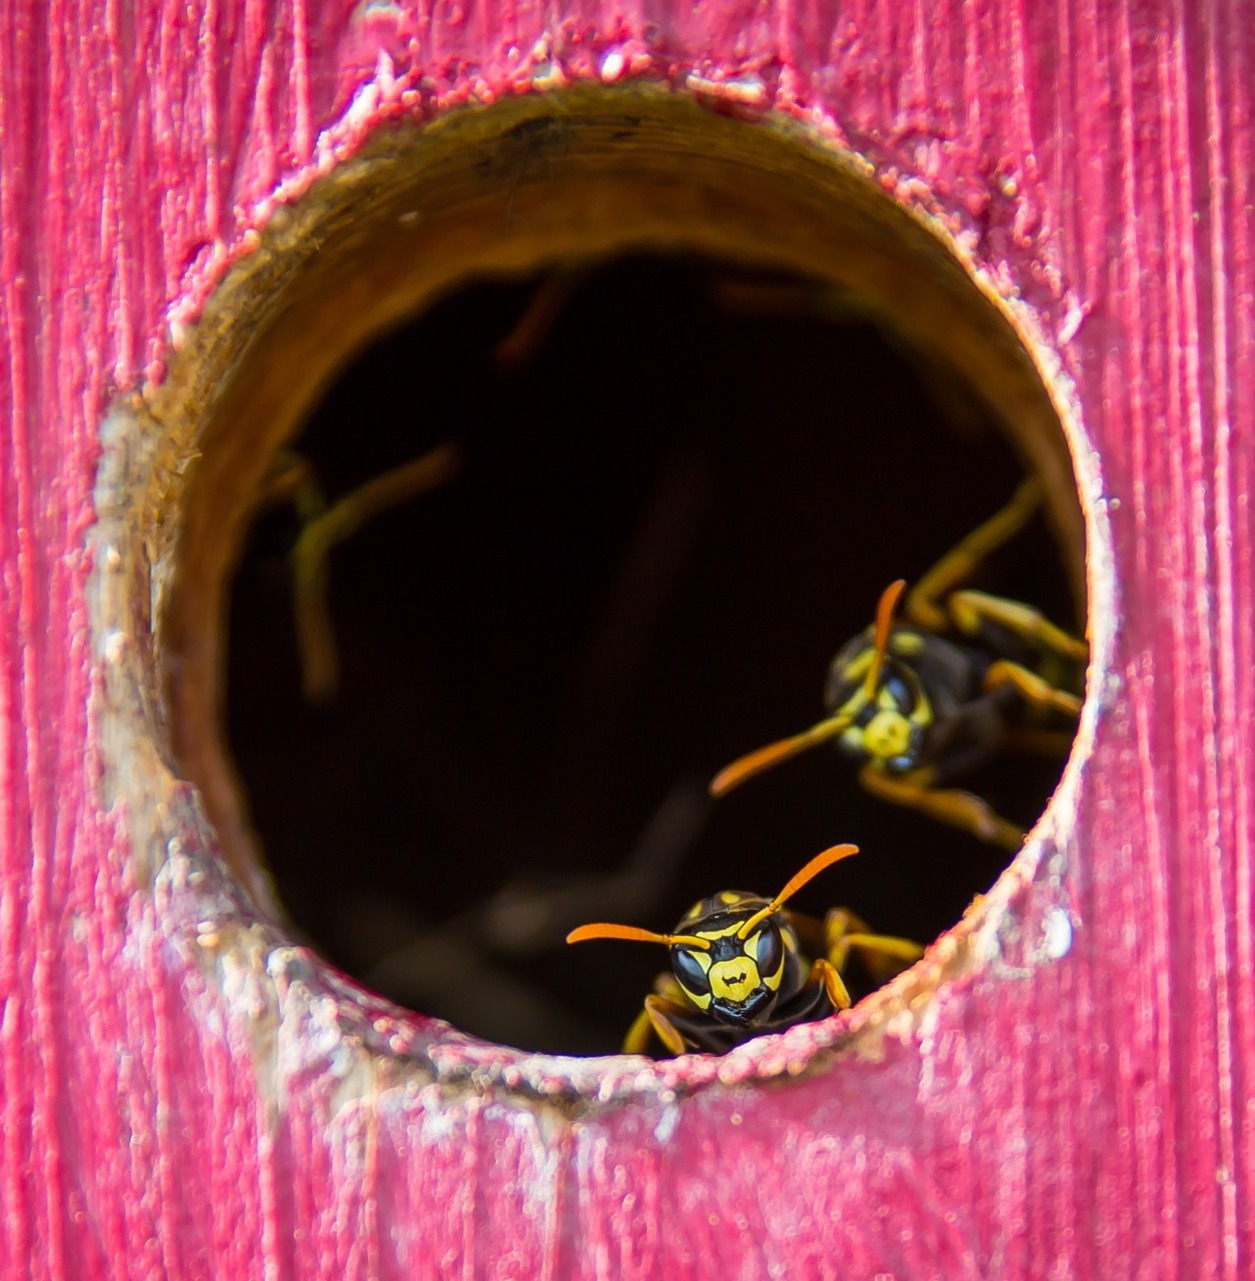 wasps in a bird box